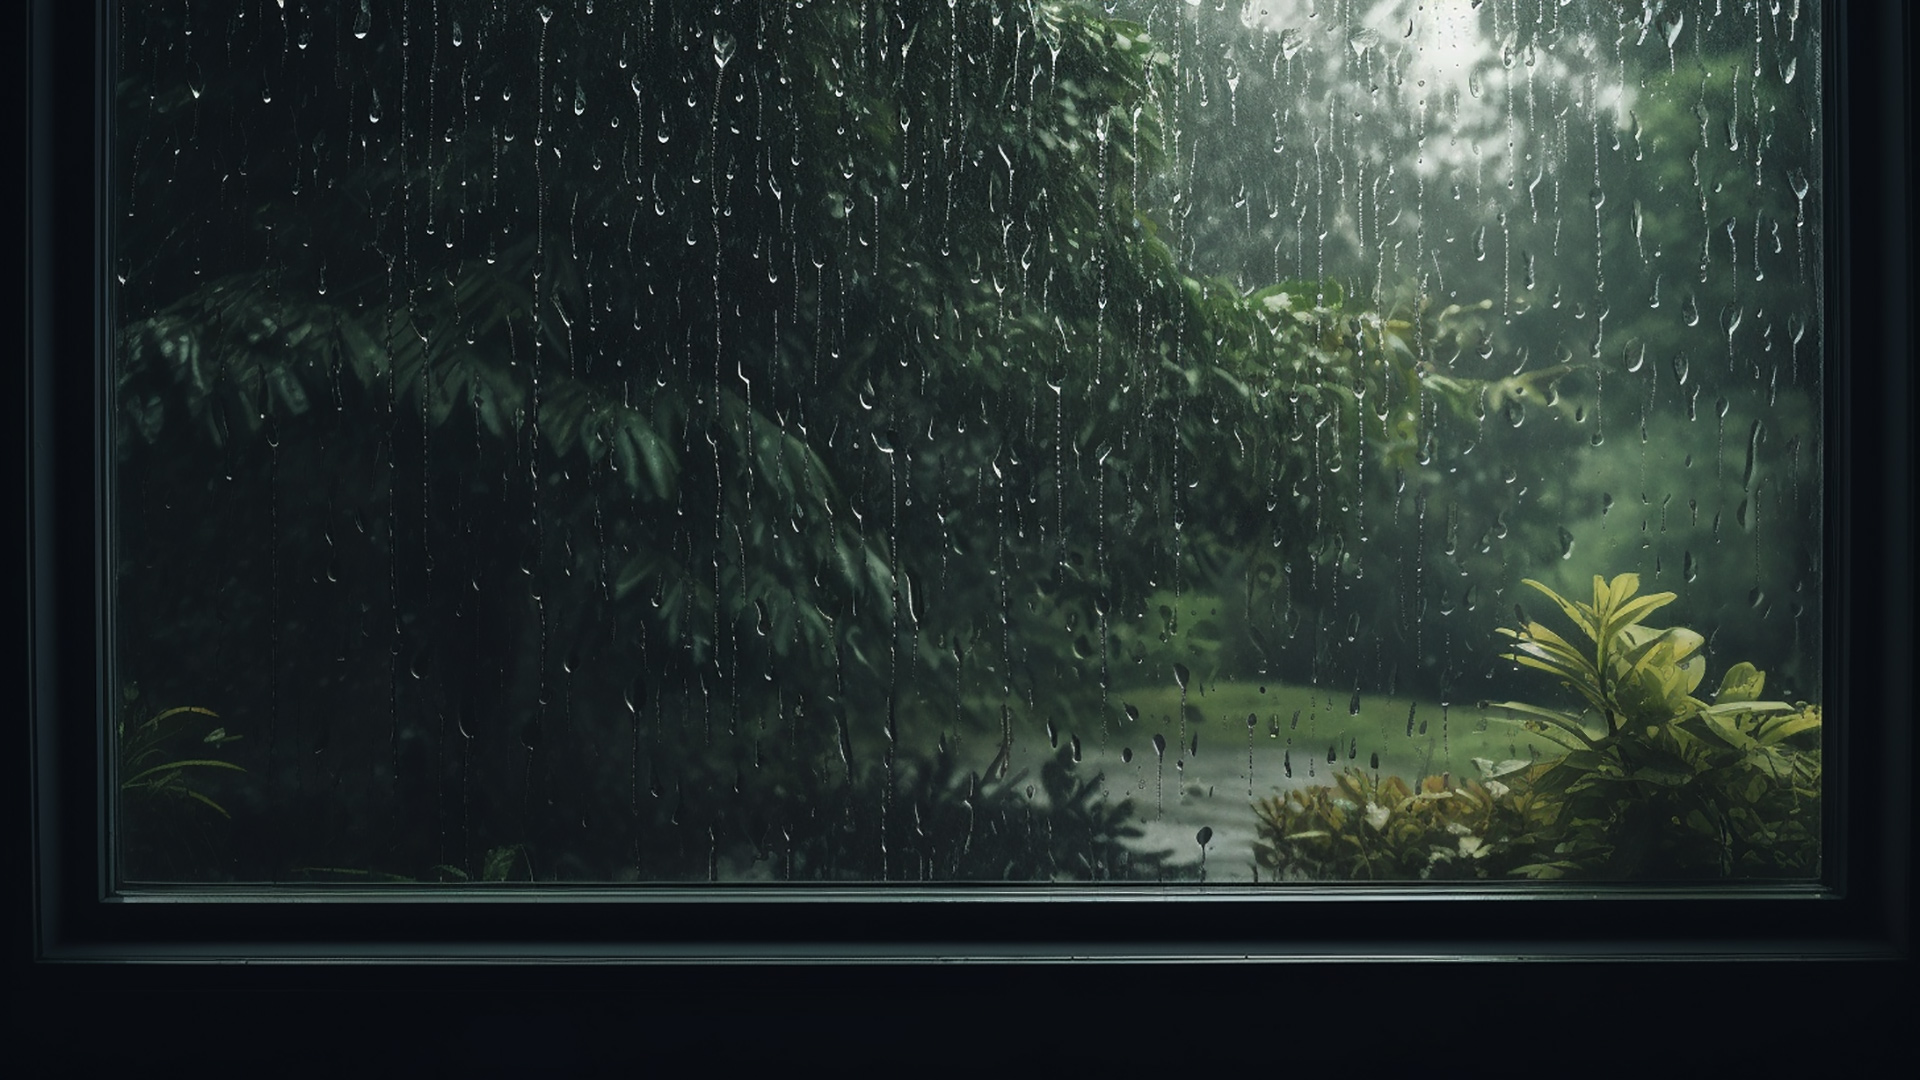 Captivating Raindrops in 4K Rainy Day Window Wallpaper